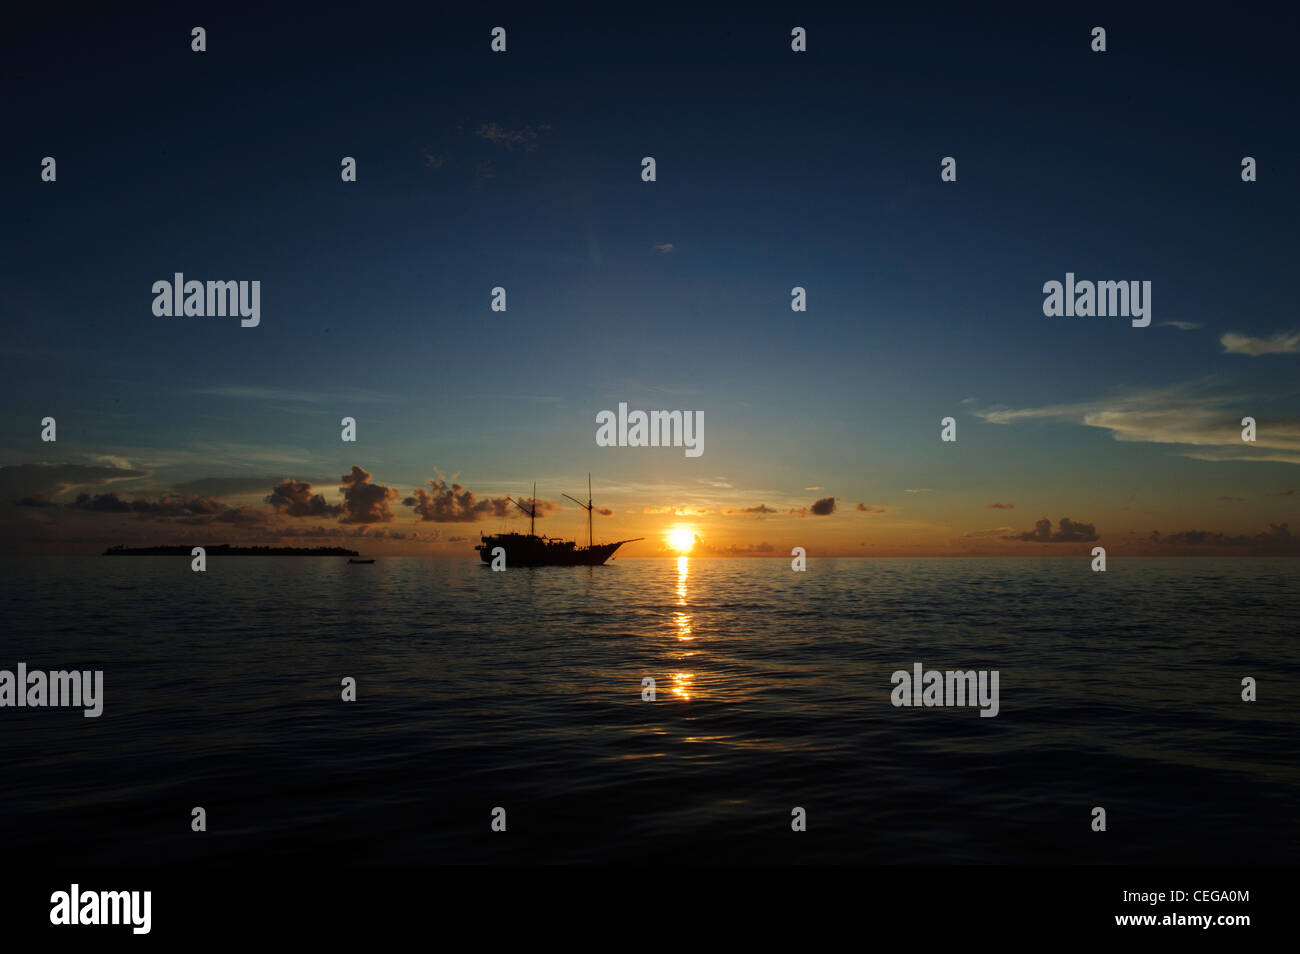 Die Damai Liveaboard vertäut in Lucipara Atoll Banada Meer, Indonesien. Sonnenuntergang erschossen. Eine schöne traditionelle Phinisi Schiff. Stockfoto